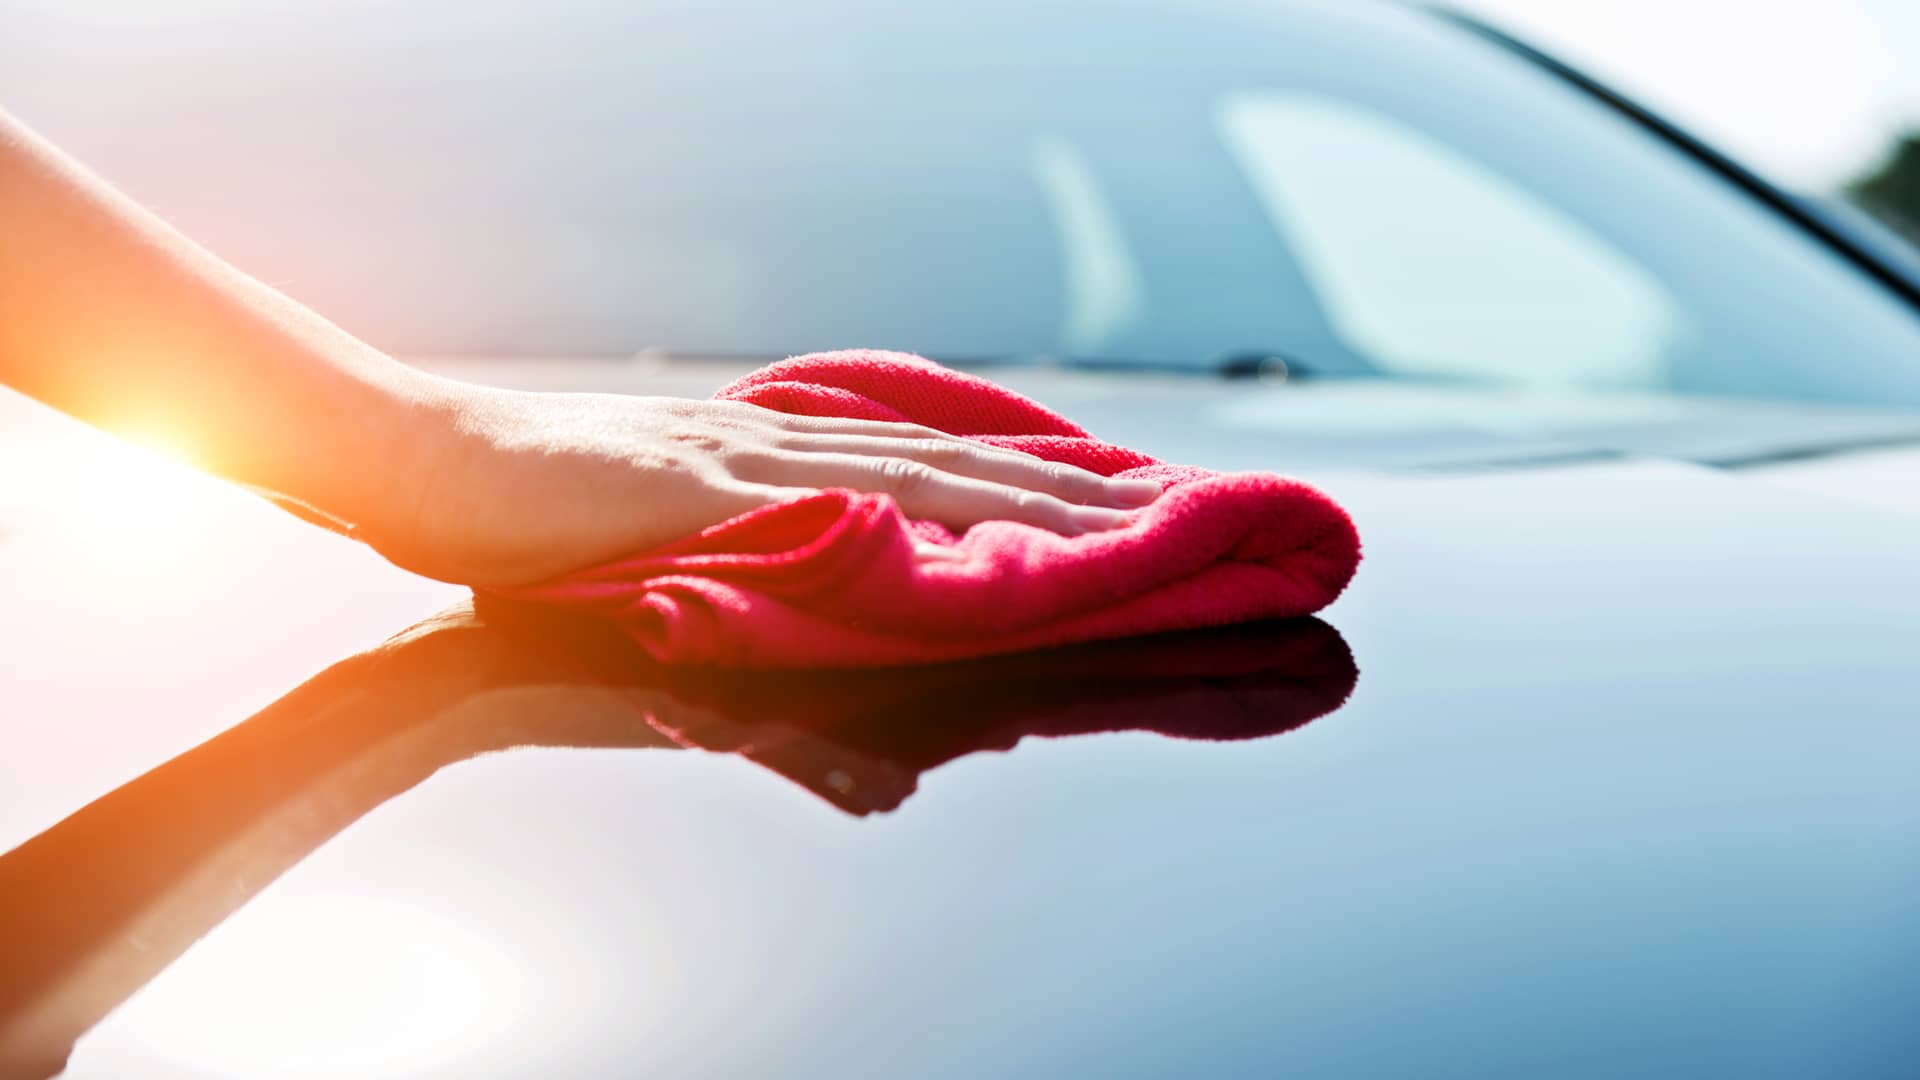 Mujer limpiando su coche asegurado con seguro banco santander